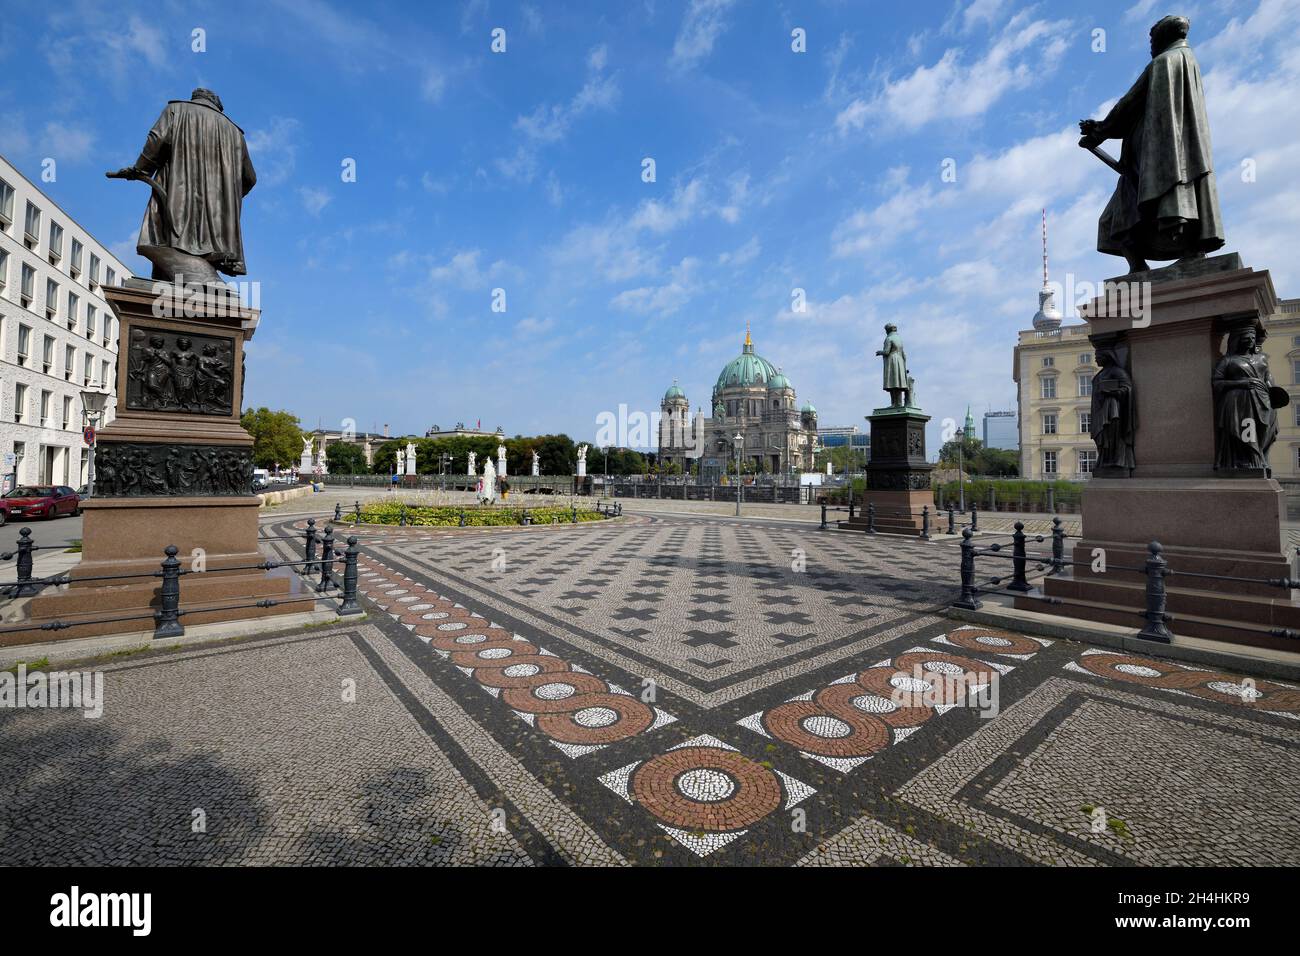 Schinkel square with statues, Schloss bridge and Berliner Dom behind, Unter den Linden, Berlin, Germany Stock Photo